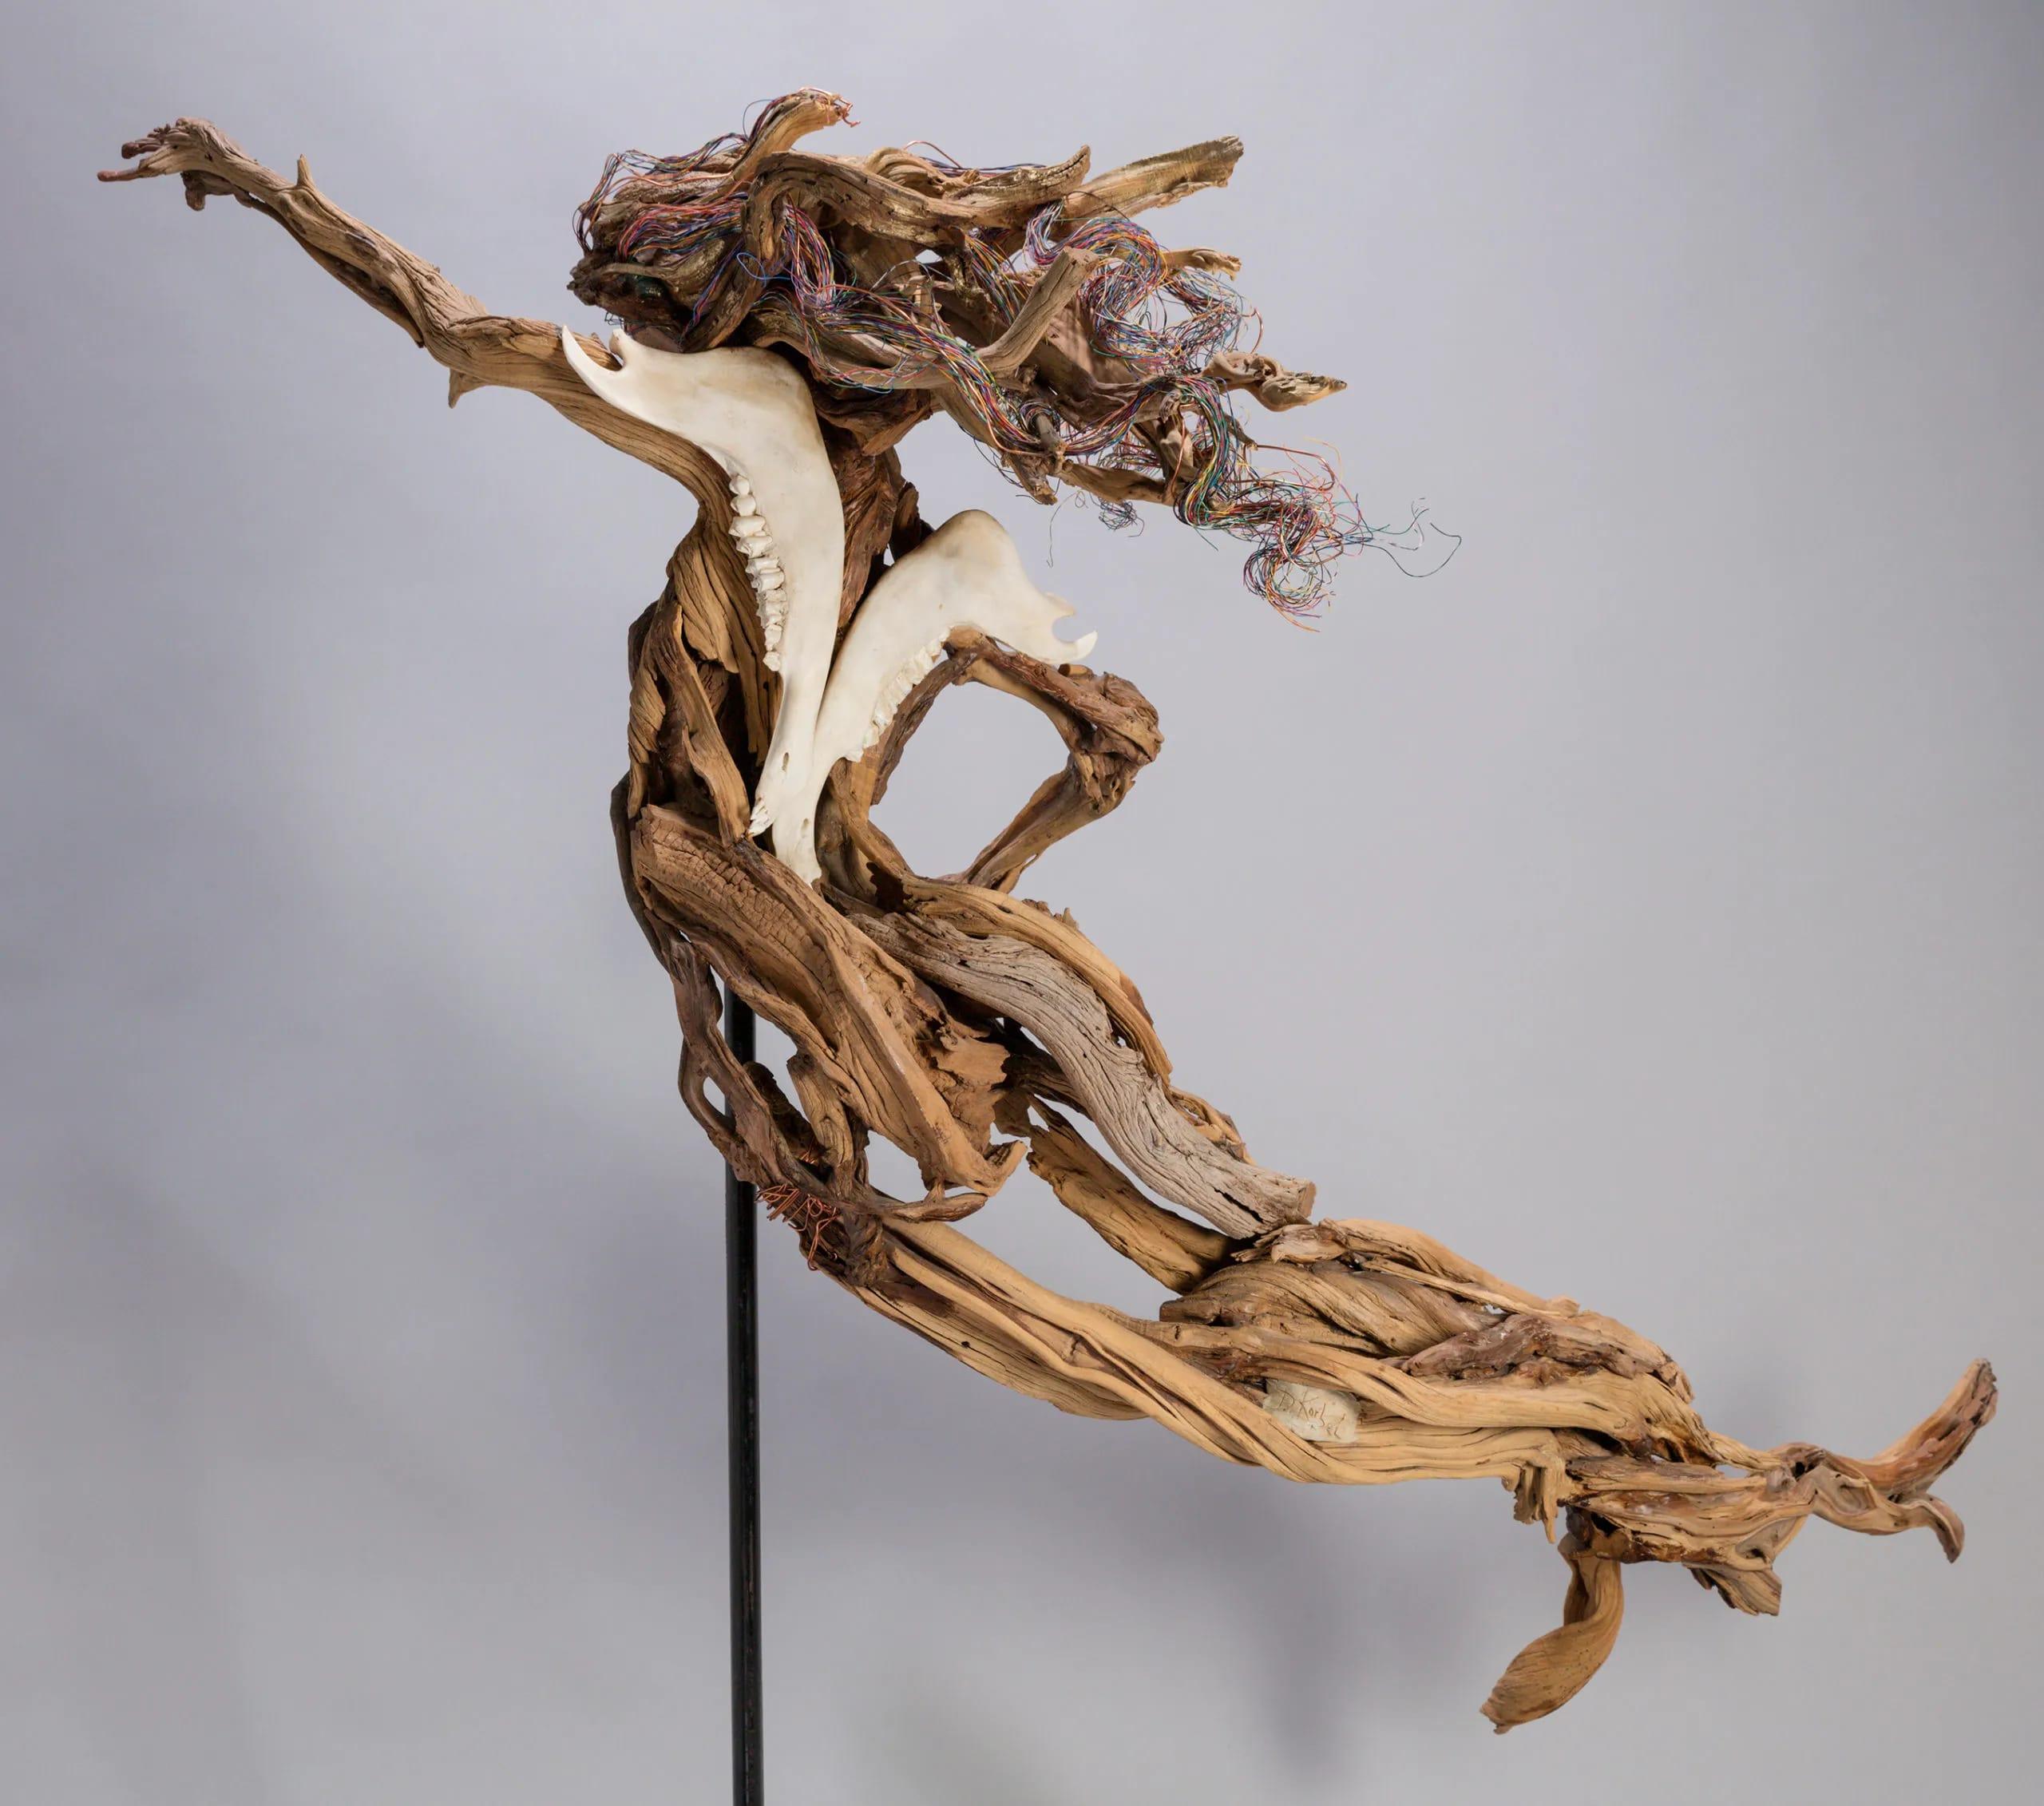 Il s'agit d'une sculpture figurative surréaliste originale, unique en son genre, réalisée en bois par l'artiste de San Diego, Debbie Korbel. Ses dimensions sont de 72